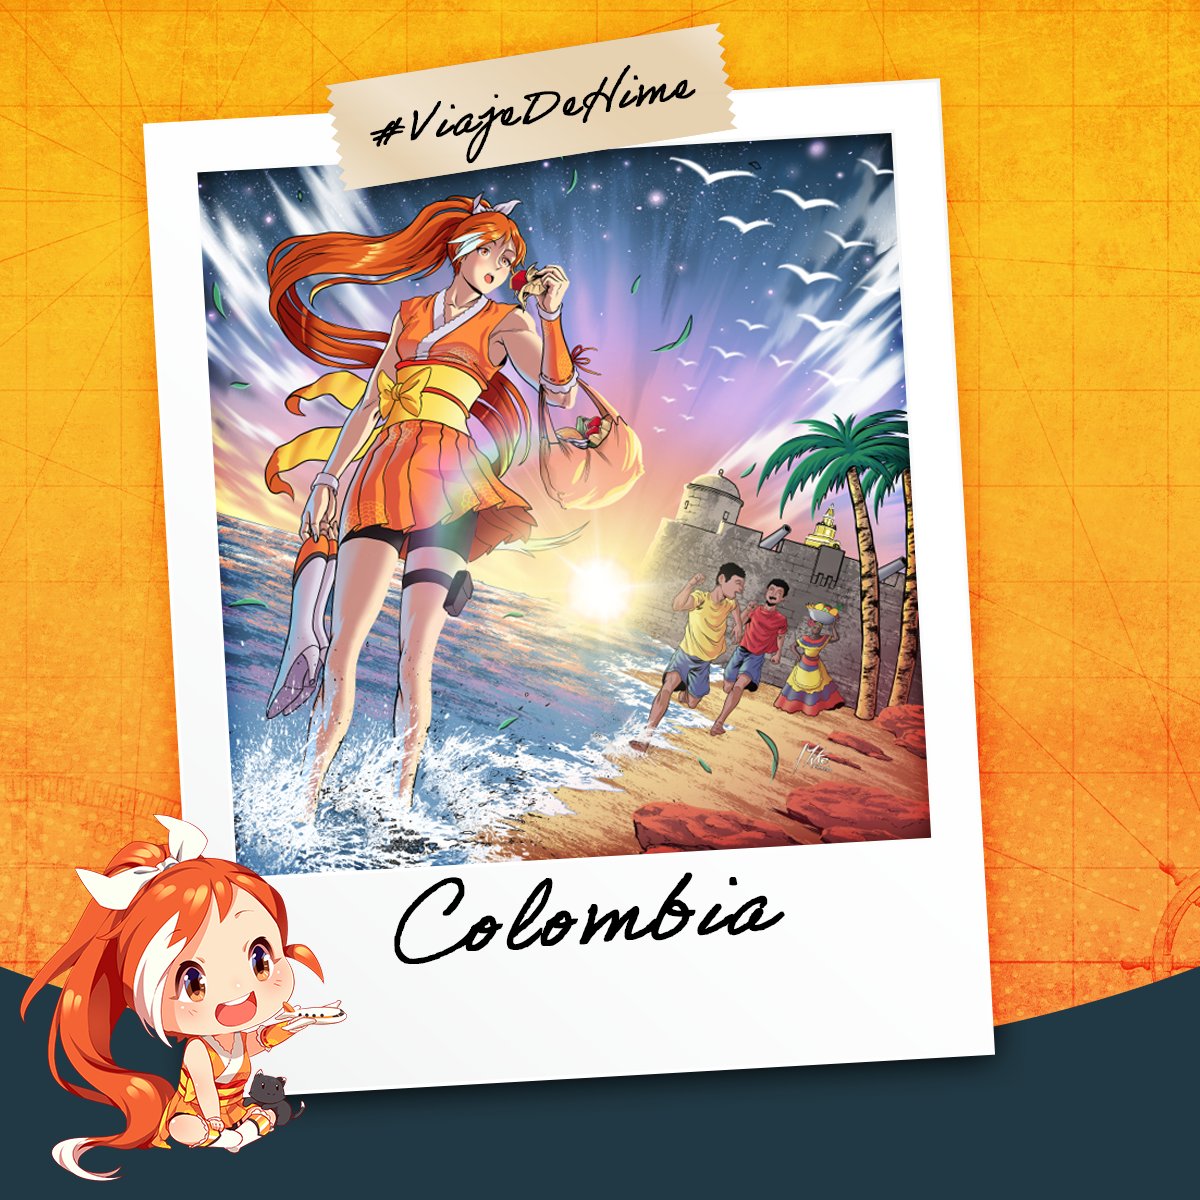 Próxima parada: ¡Colombia! 🇨🇴 #ViajeDeHime Hermoso atardecer el que disfruté en la ciudad amurallada, en Cartagena, con un delicioso bocadillo veleño. ¡Qué vaina tan sabrosa! Imagen por: @ArtCamelo